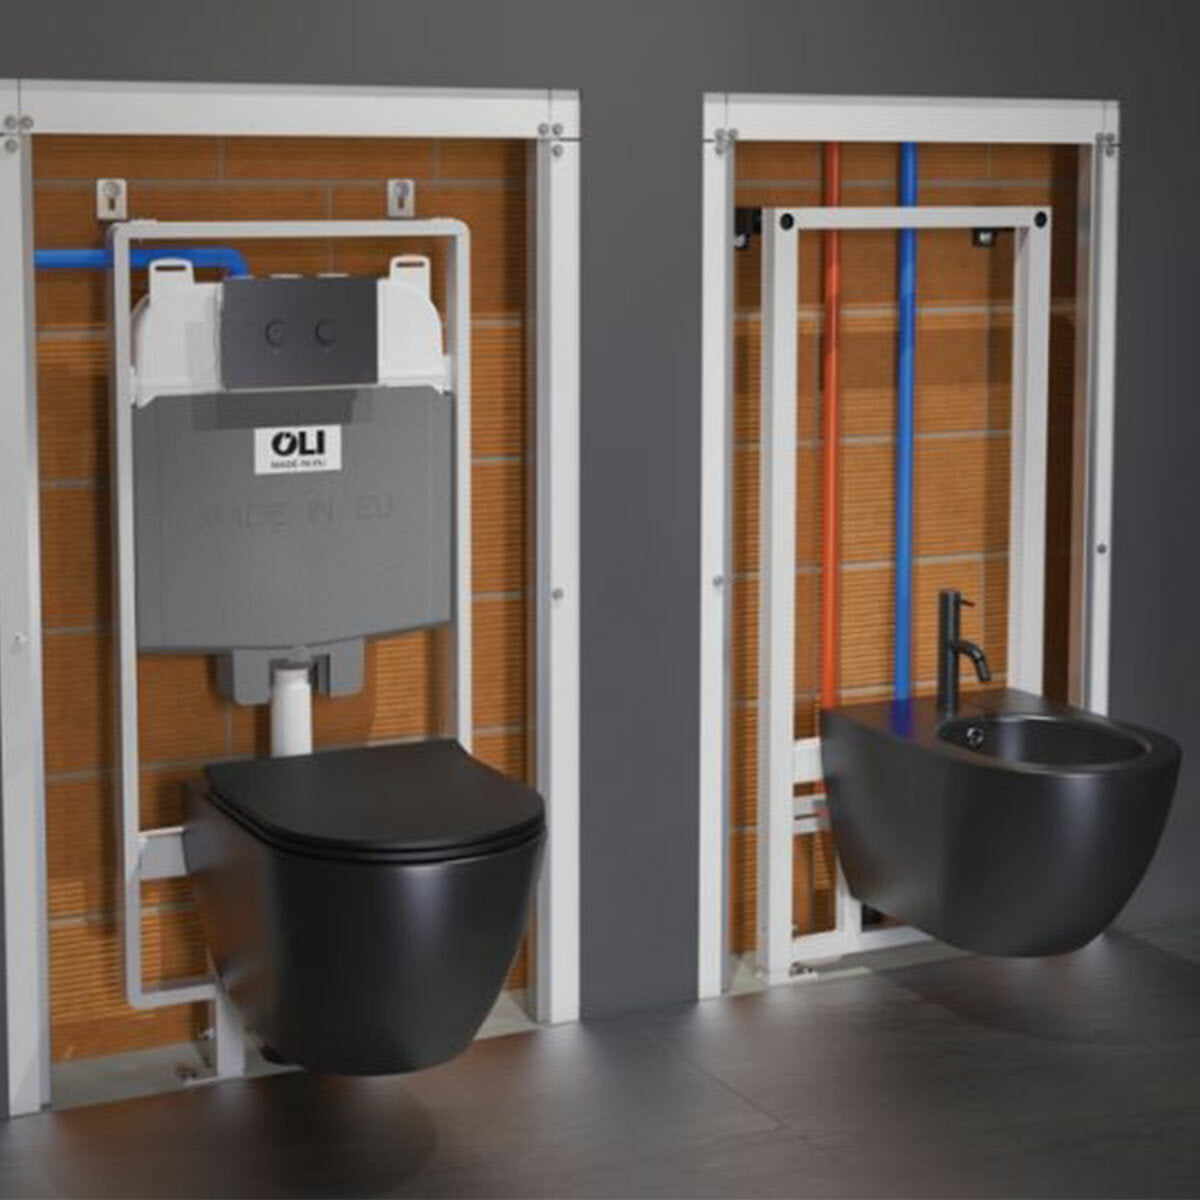 OLI OLI74 PLUS S80 SANITARBLOCK Einbau-Spülkasten für wandhängende Sanitärkeramik